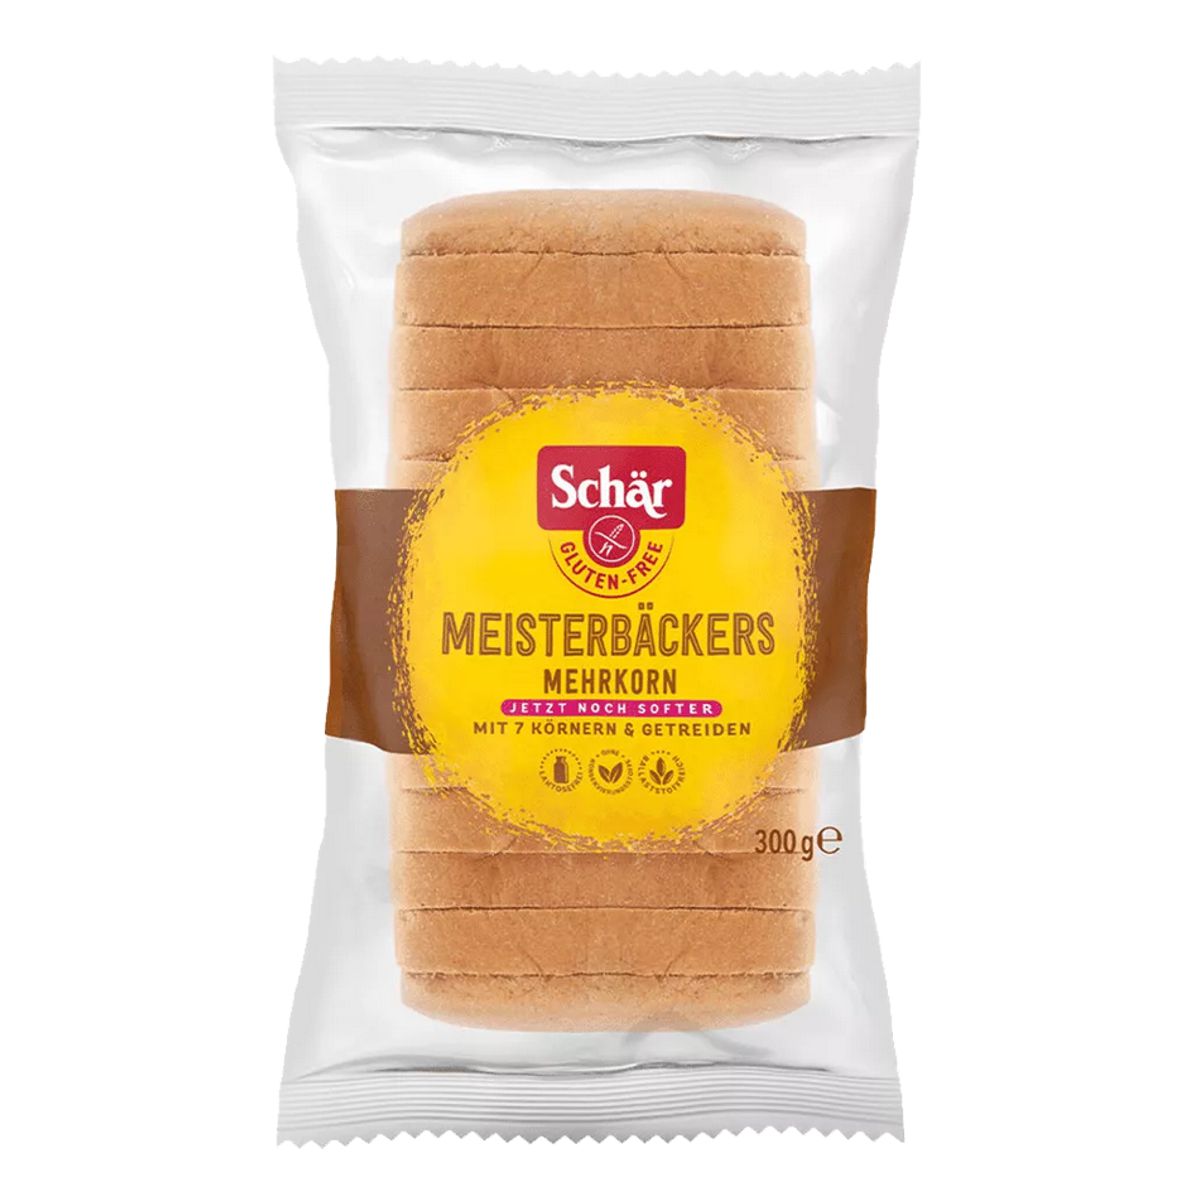 Schär_Meisterbäckers_Mehrkorn_glutenfrei_300g_kaufen